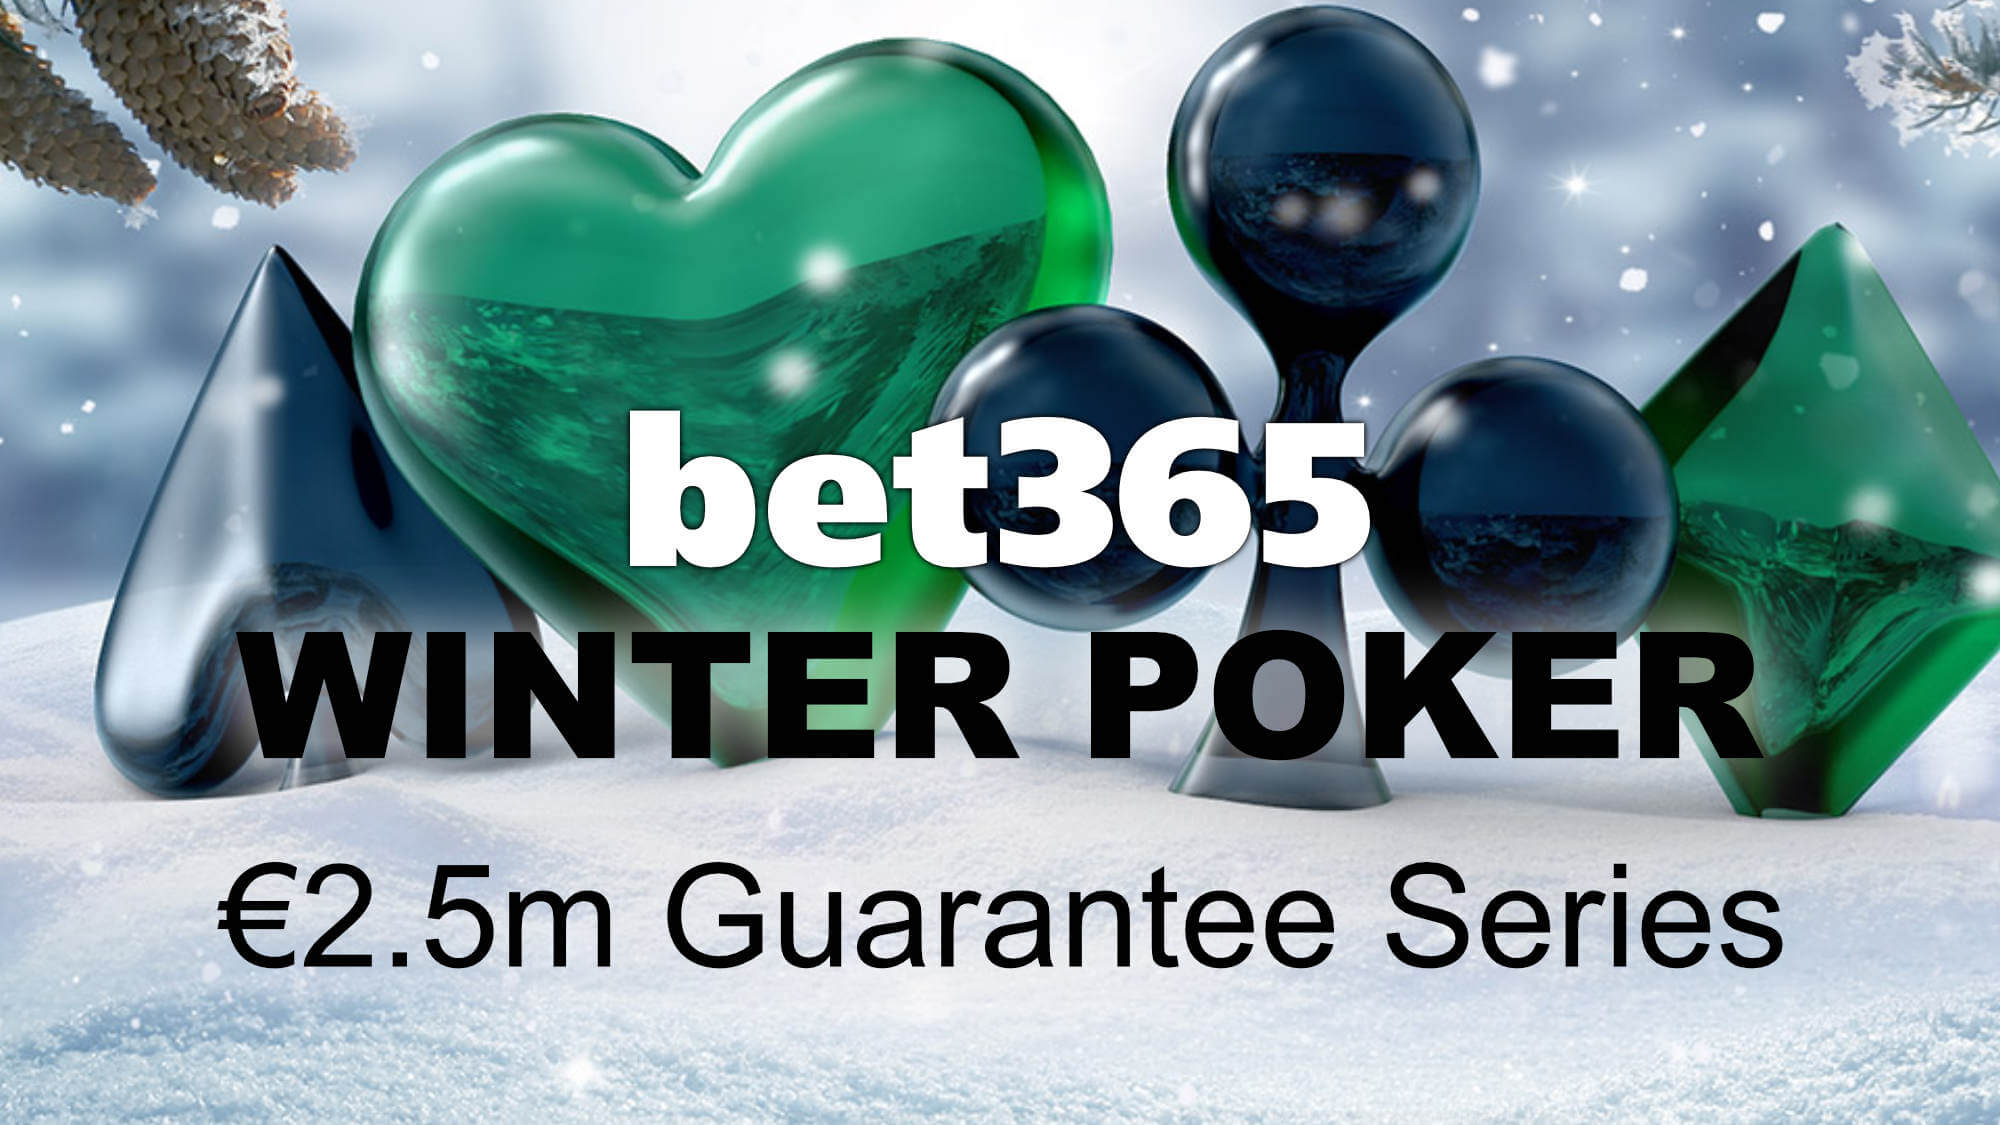 Bet365 Winter Poker - iPoker Festival